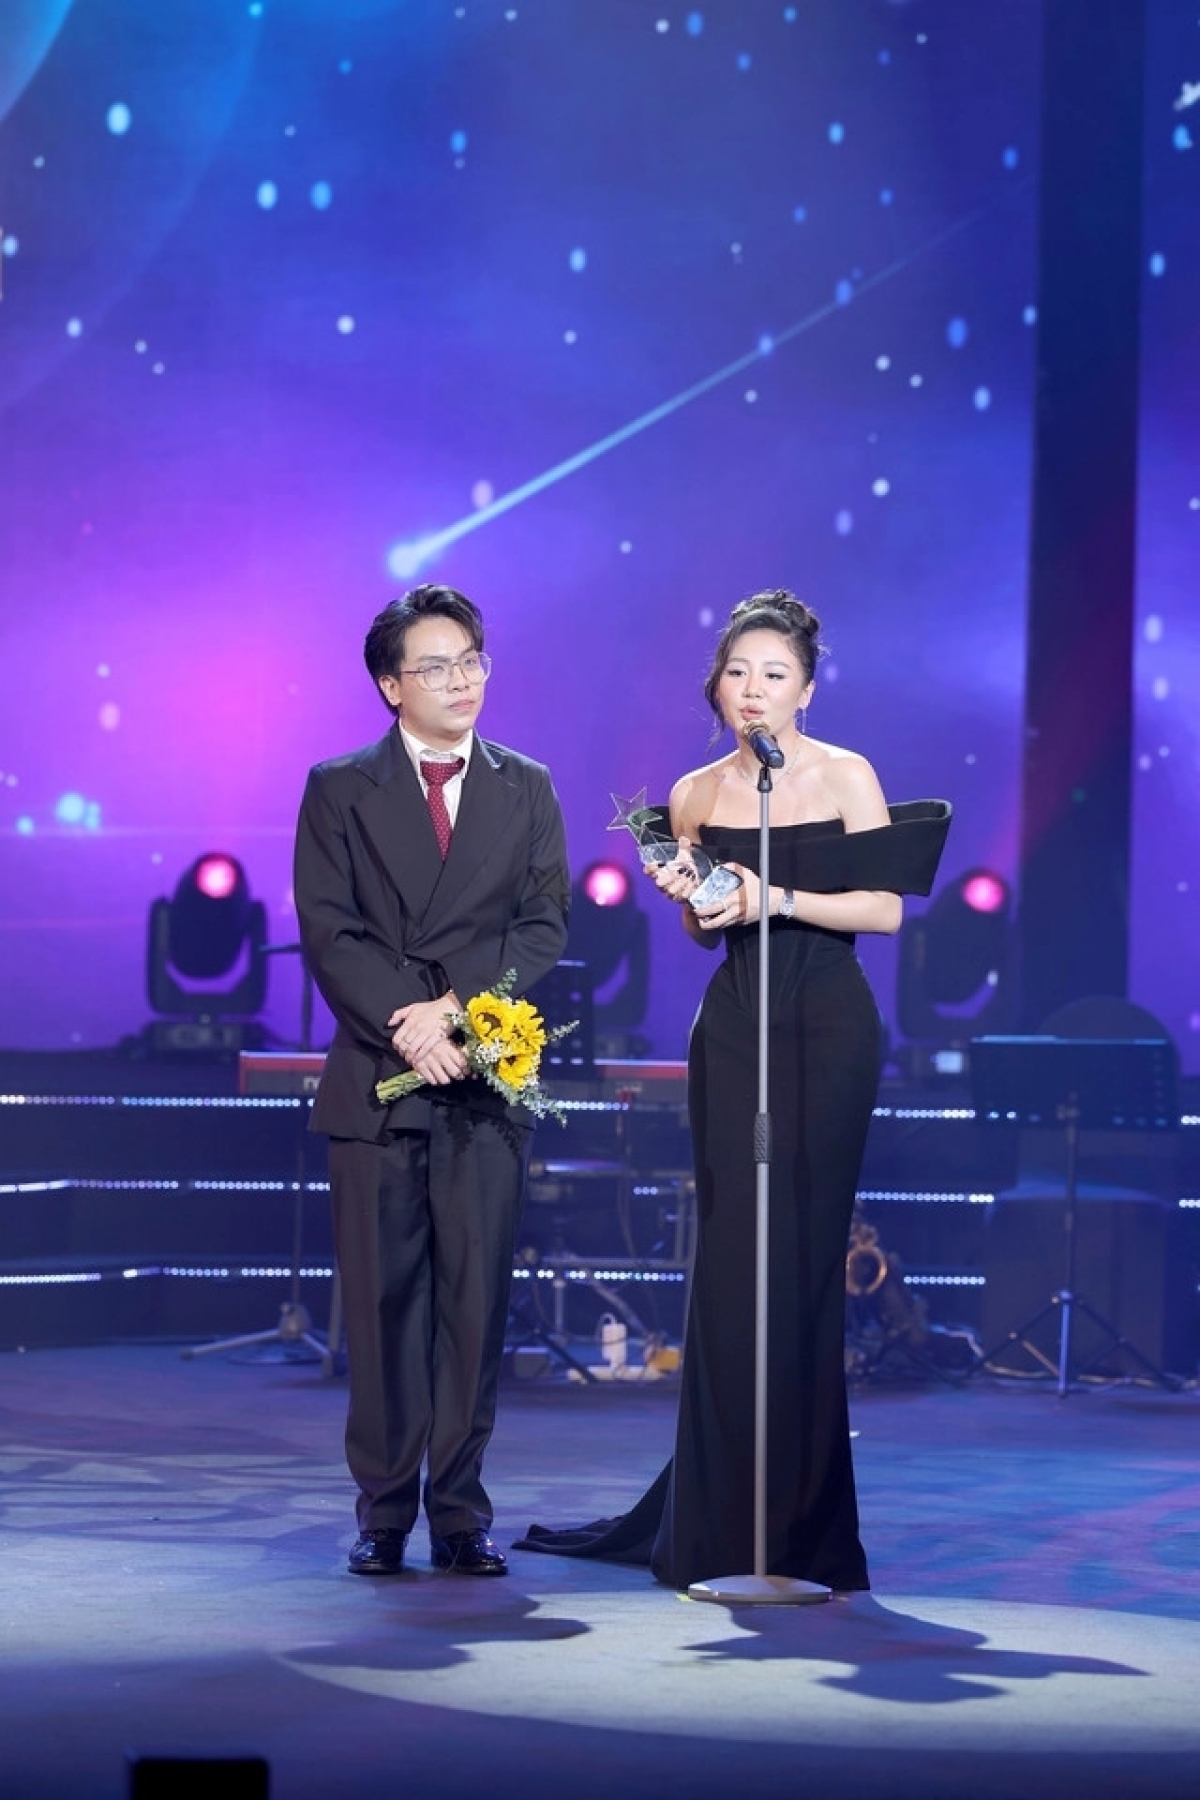 Album của năm: Album "Minh tinh" của Văn Mai Hương với sự đồng hành của Hứa Kim Tuyền, được giới chuyên môn, khán giả đánh giá cao kể từ khi ra mắt..